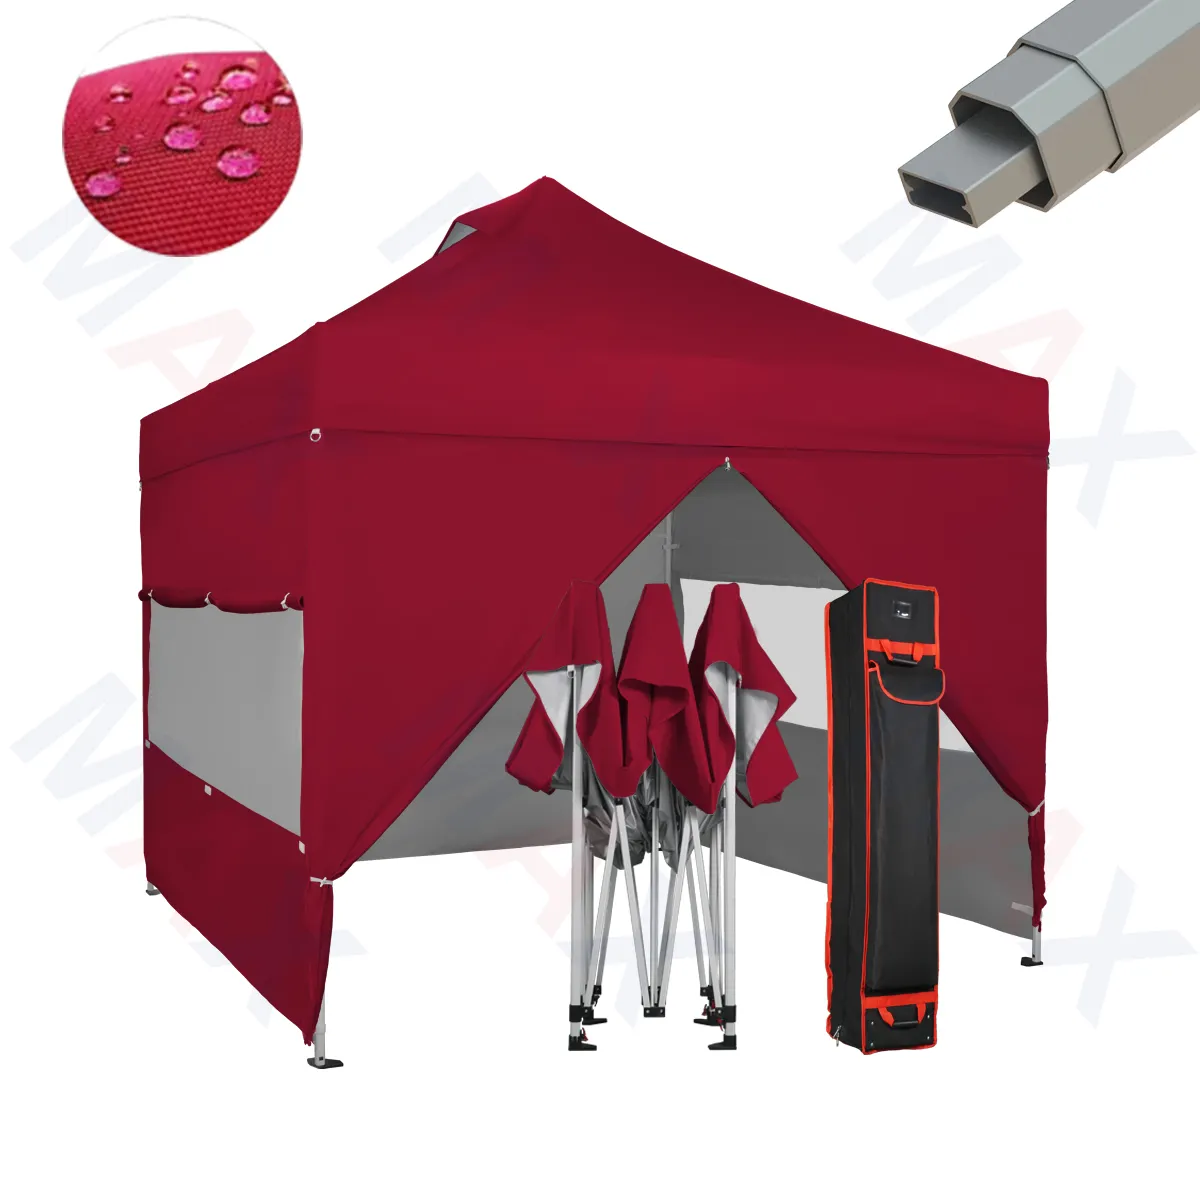 Octuma 32mm אלומיניום מסגרת 1010 עם הצדדיים ו rollerbag פופ עד גג חוף אוהלים עבור תצוגת תערוכה